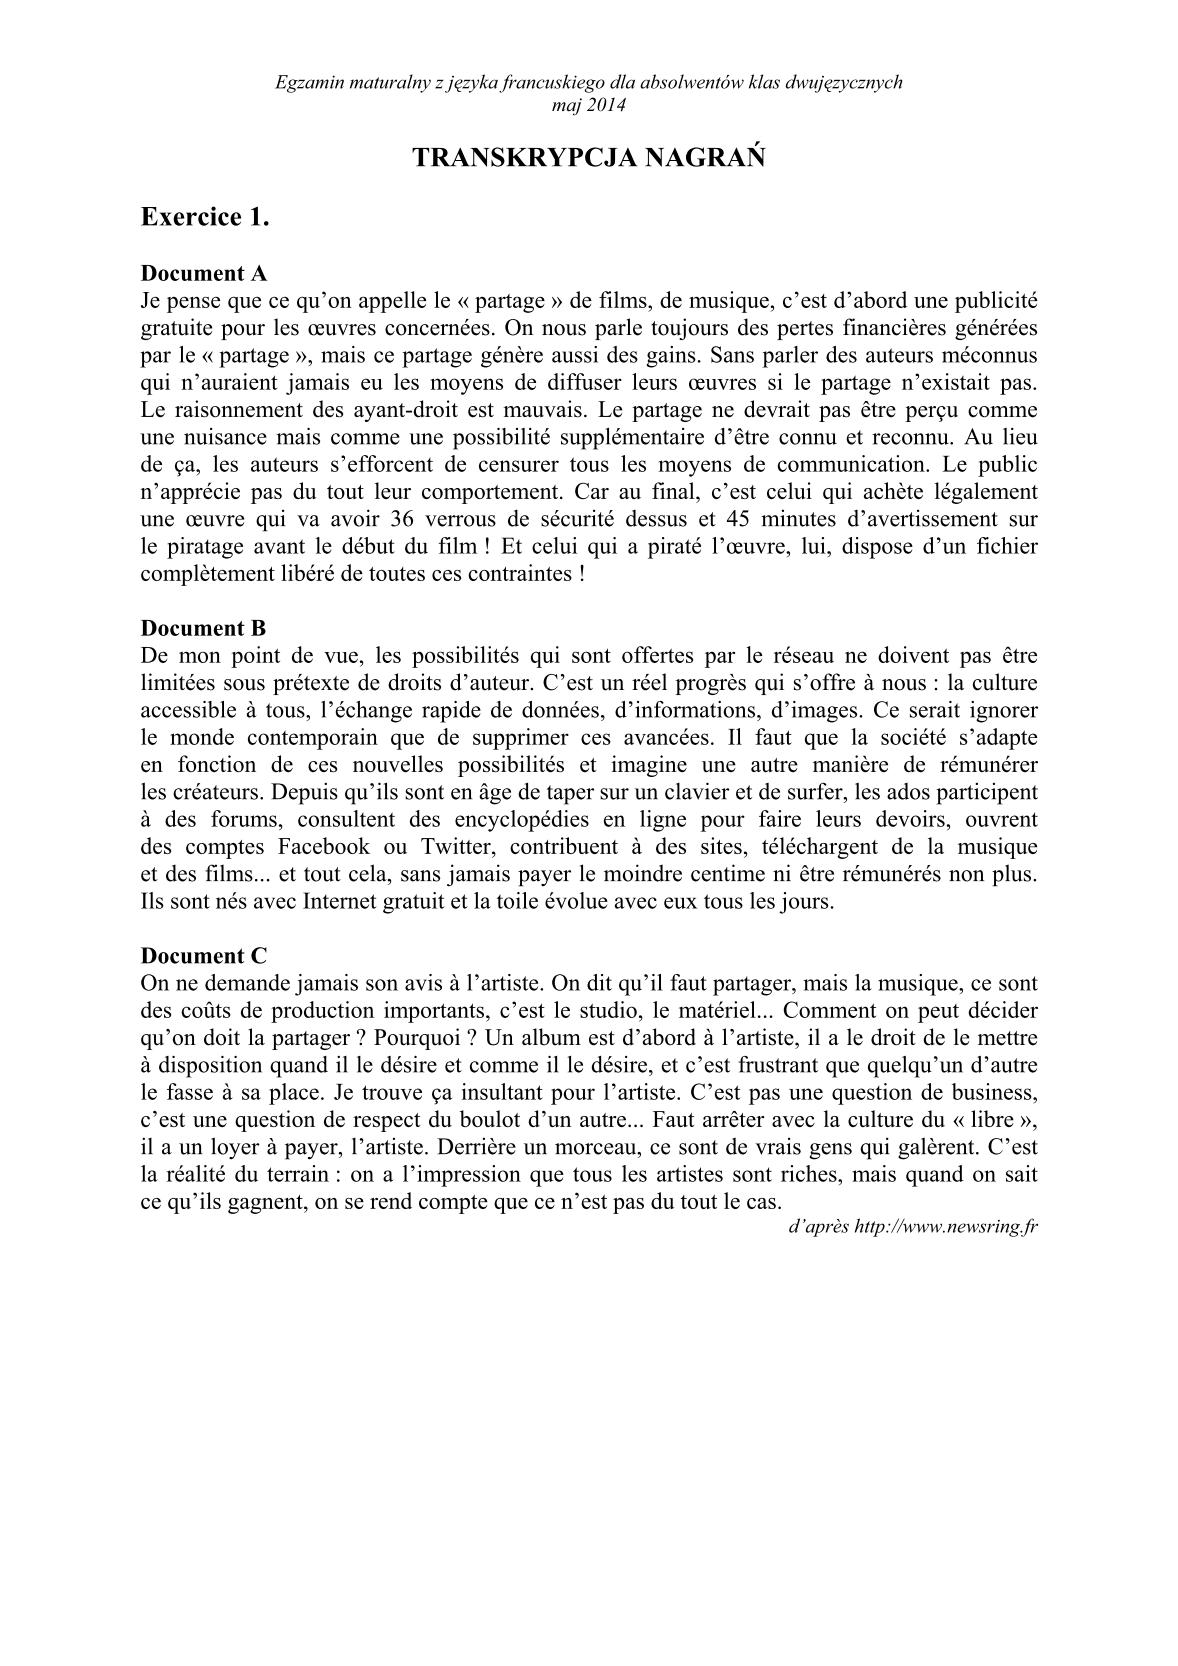 transkrypcja-jezyk-francuski-dla-absolwentow-klas-dwujezycznych-matura-2014-str.1